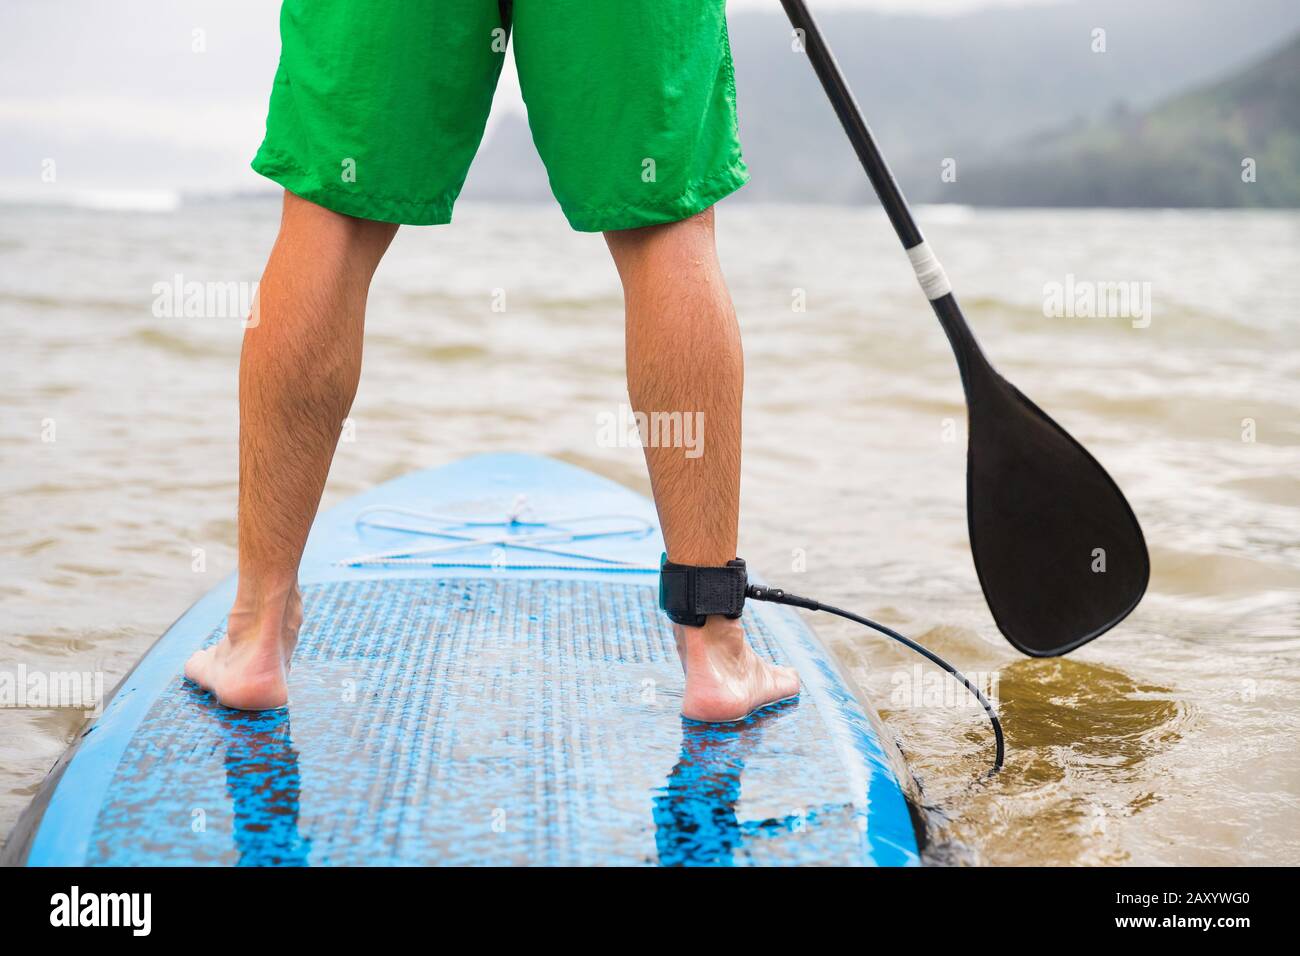 Paddleboard-Mann paddelt auf dem SUP Stand Up Paddle Board am See. Nahaufnahme von Füßen und Beinen. Stockfoto